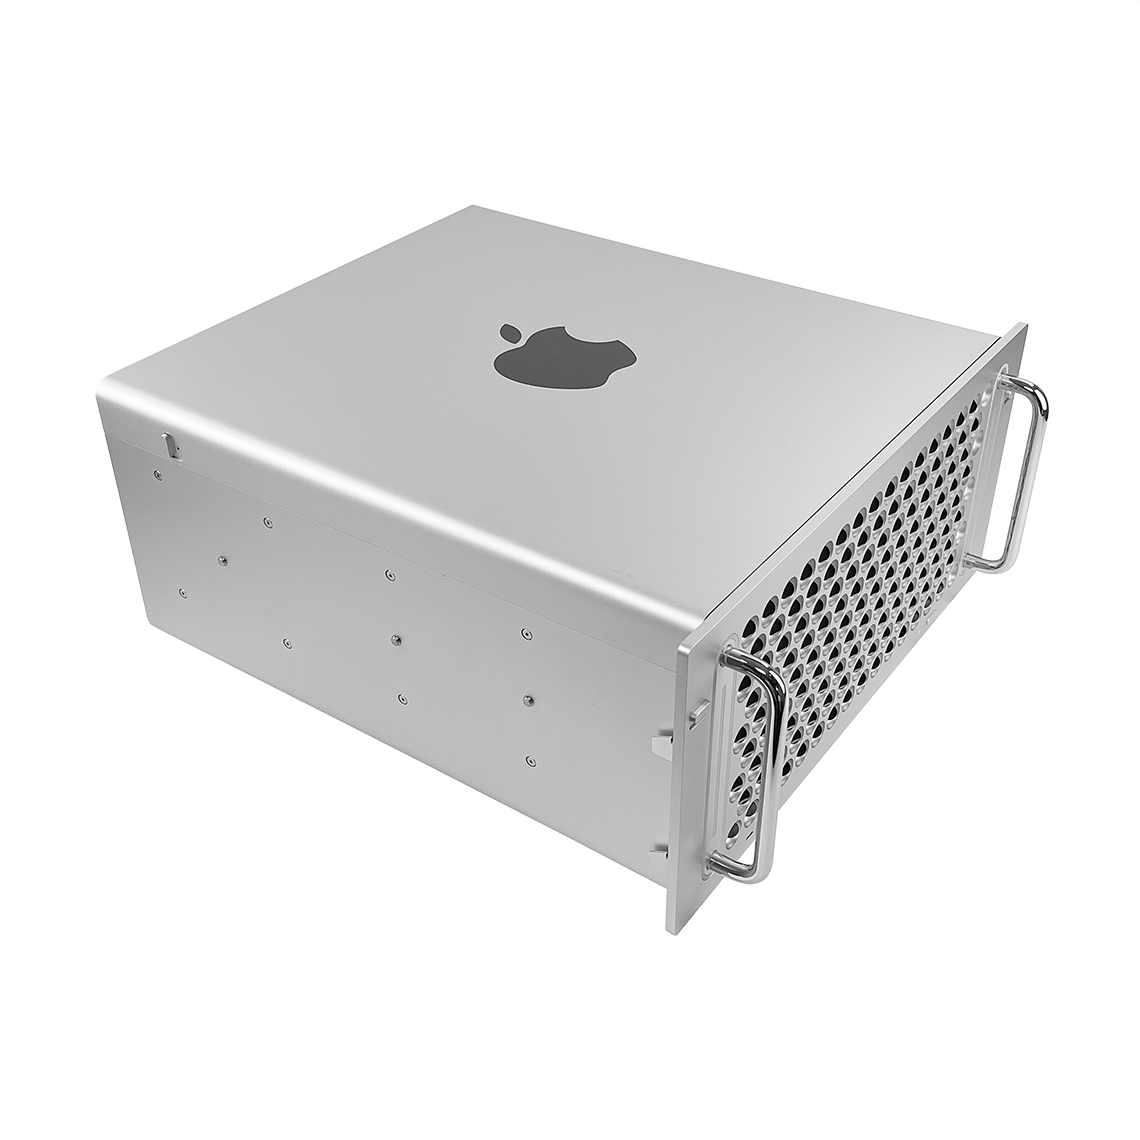 Apple 2019 Mac Pro - Intel Xeon 24-Core, 384GB RAM, 4TB Flash, AMD Radeon Pro Vega II Duo 64GB, Rack Mount, Grade A